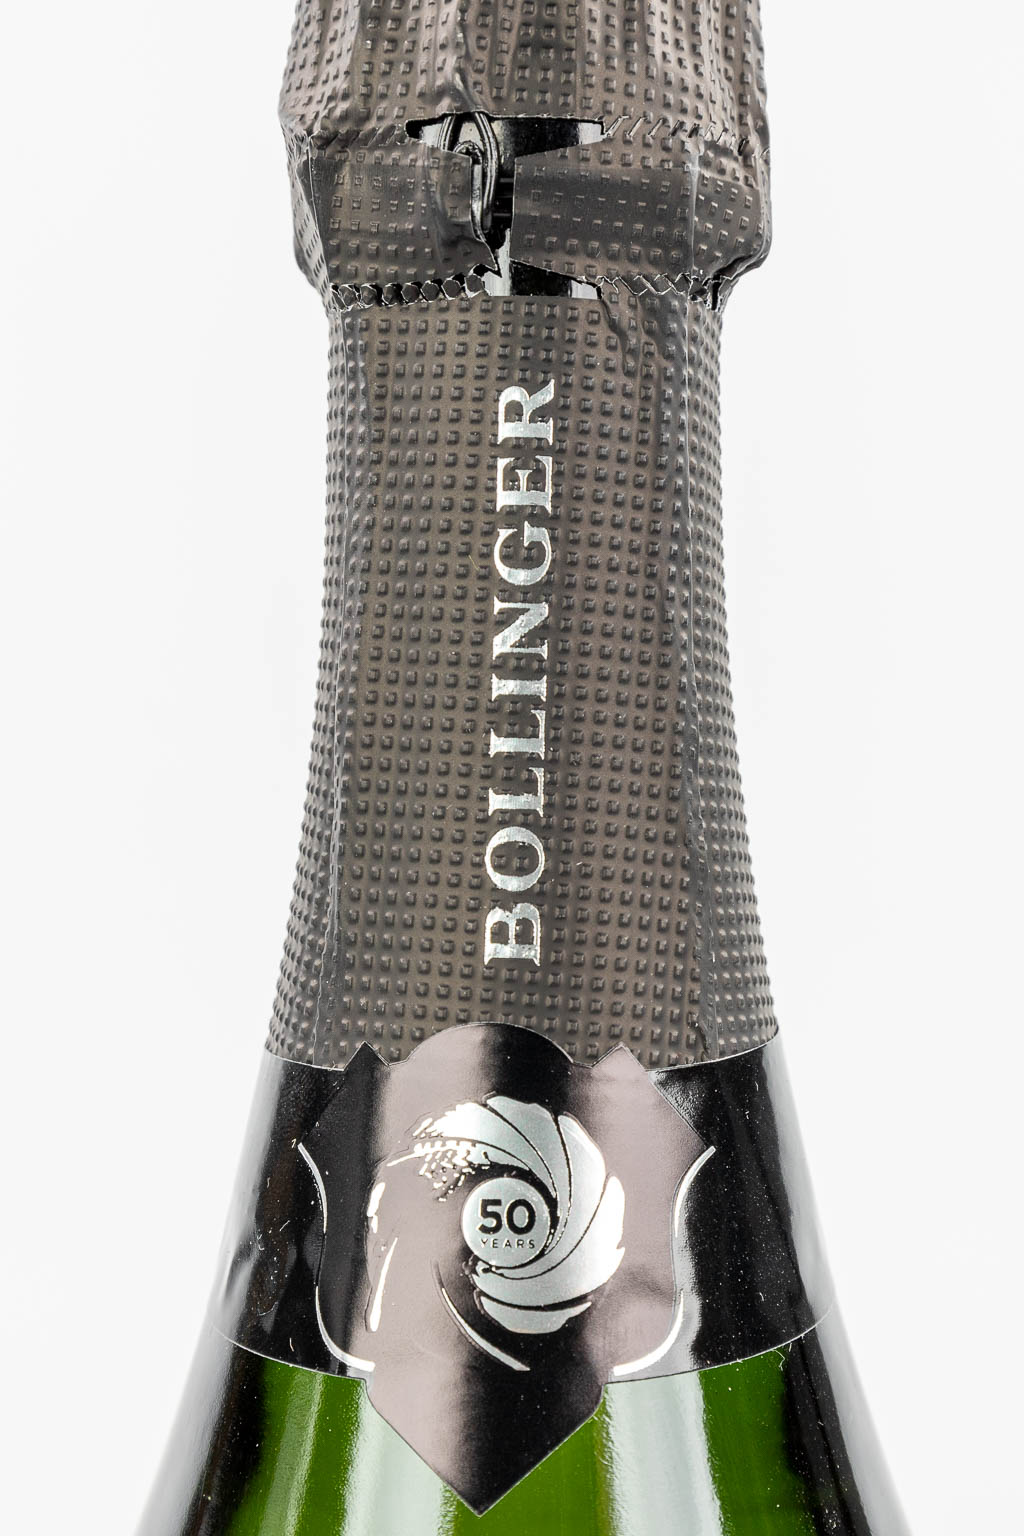 Een fles Bollinger Champagne speciale editie James Bond. 2002. (H:33cm)